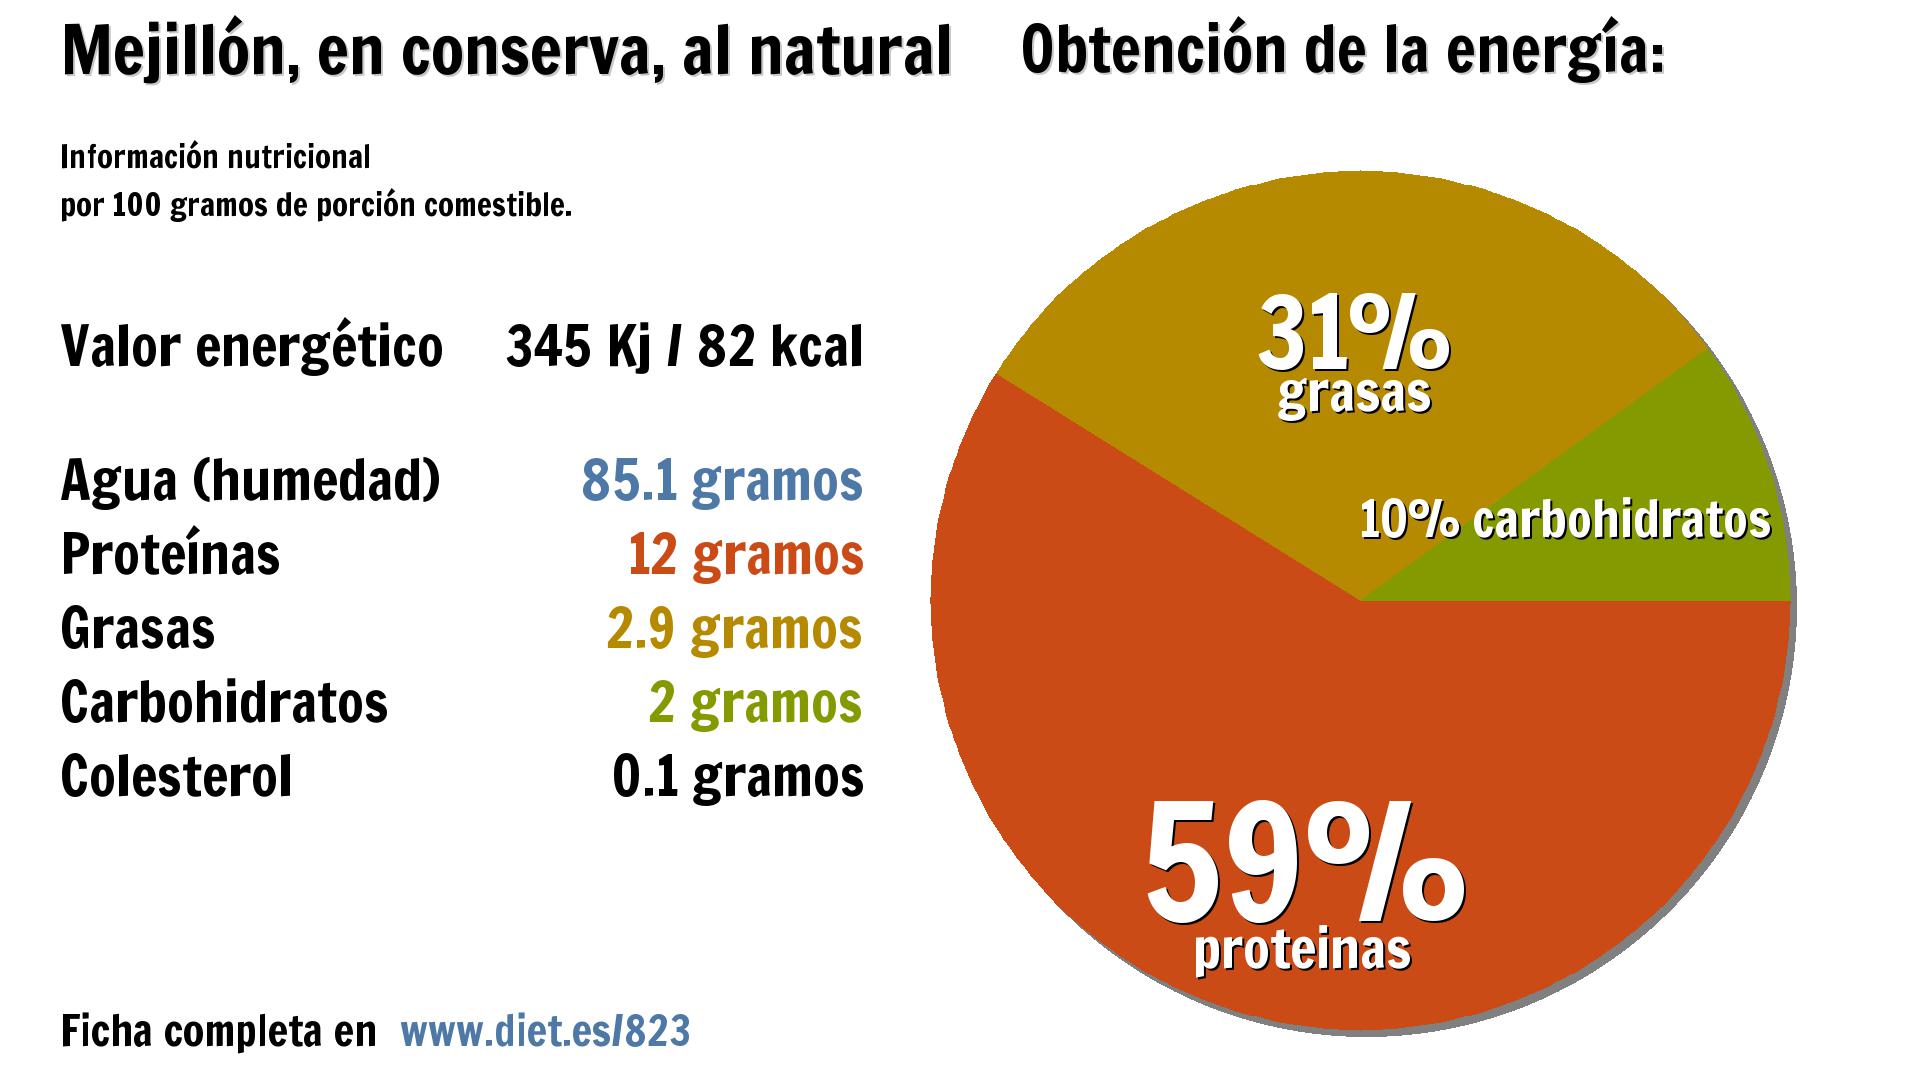 Mejillón, en conserva, al natural: energía 345 Kj, agua 85 g., proteínas 12 g., grasas 3 g. y carbohidratos 2 g.